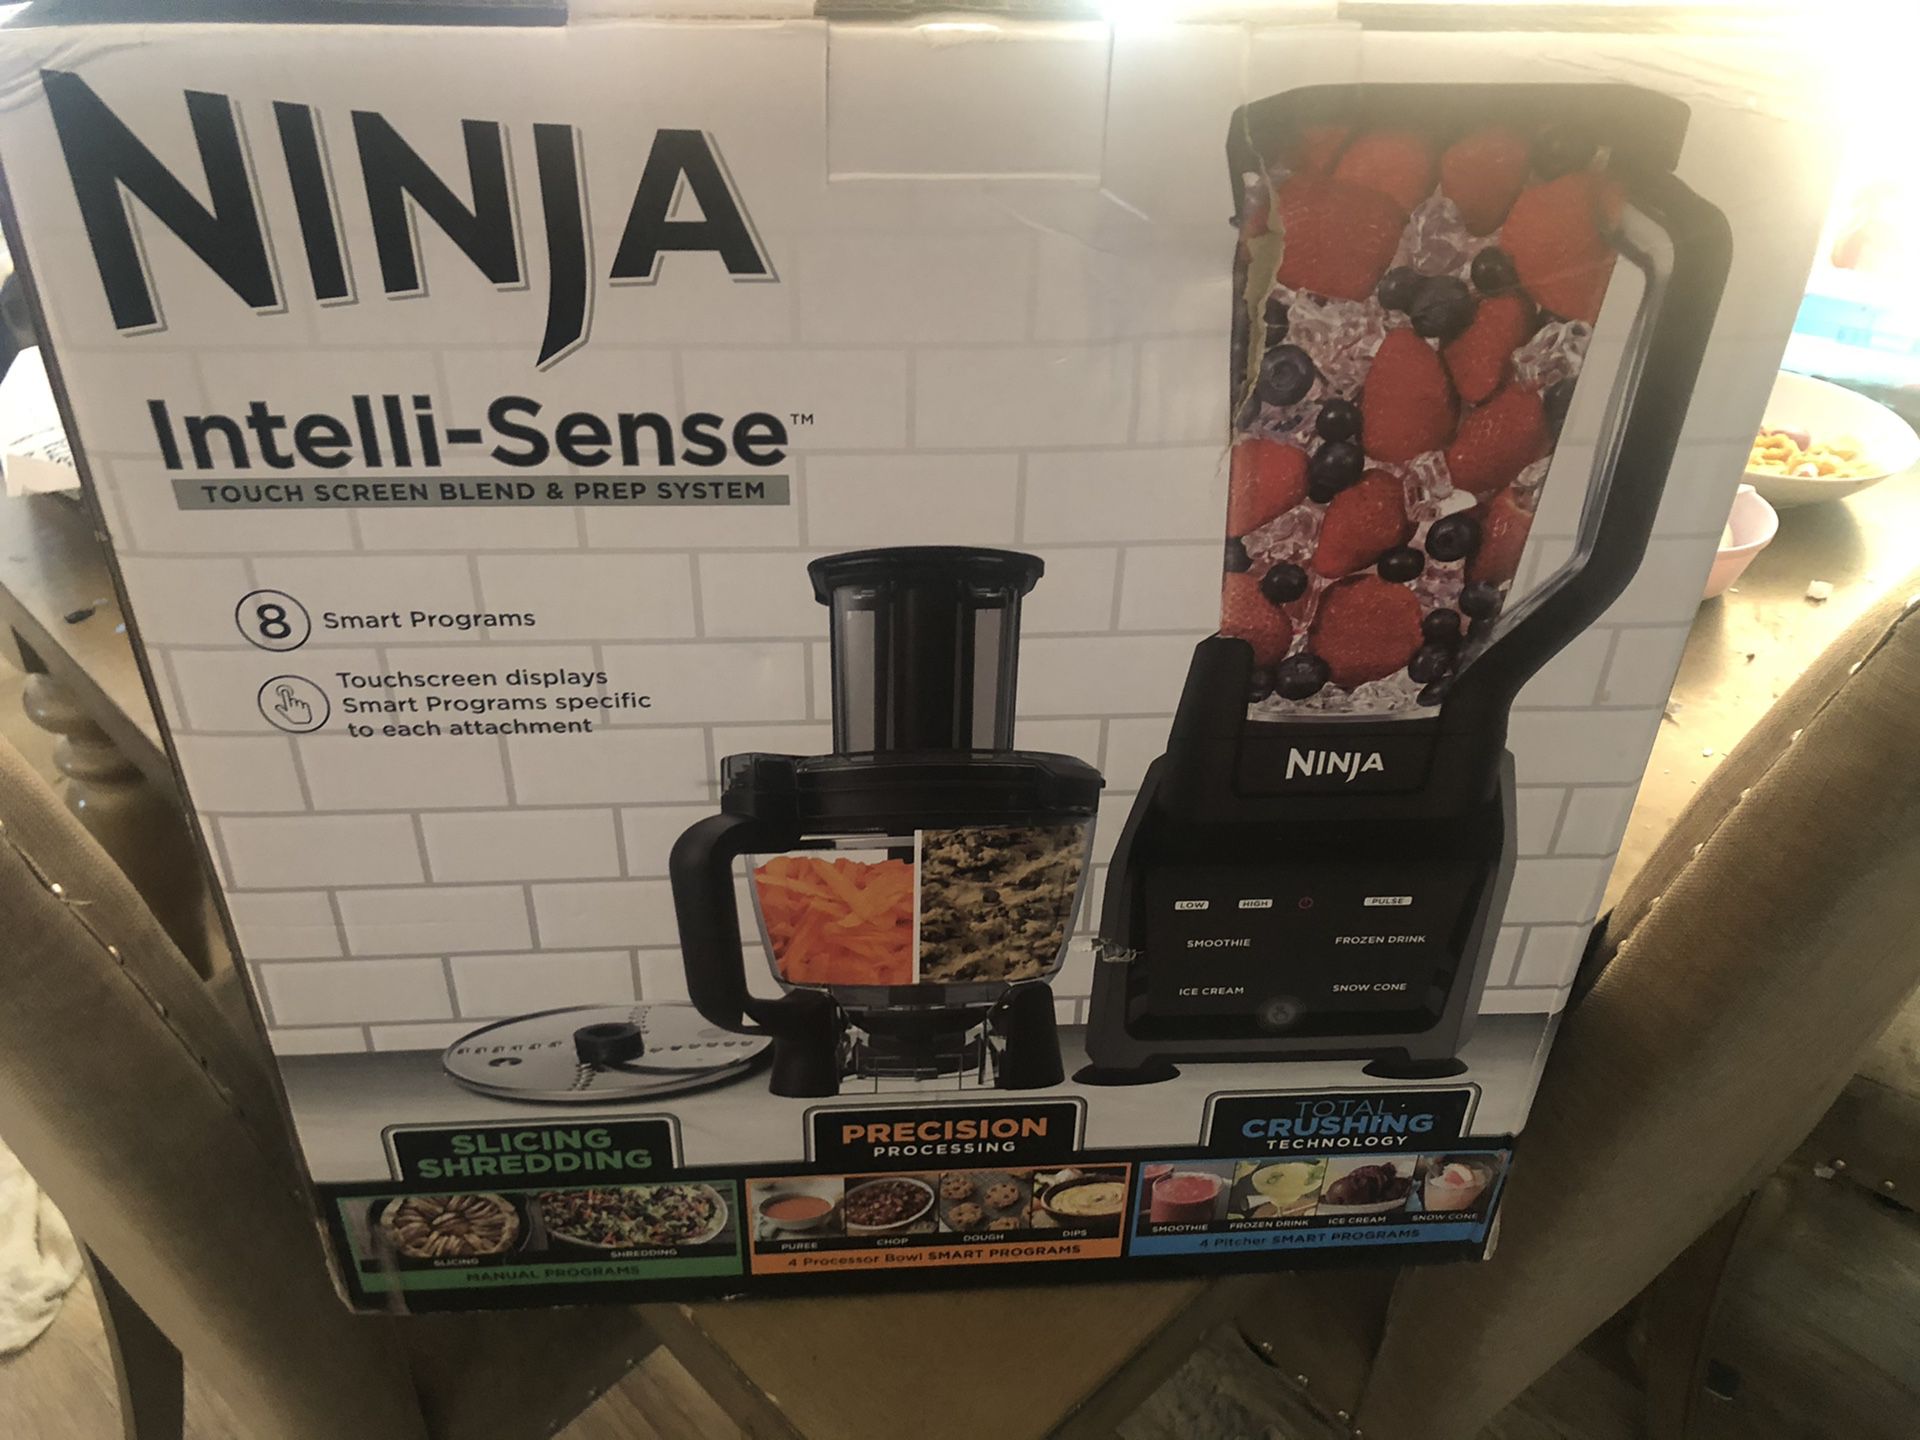 Brand new Ninja blender